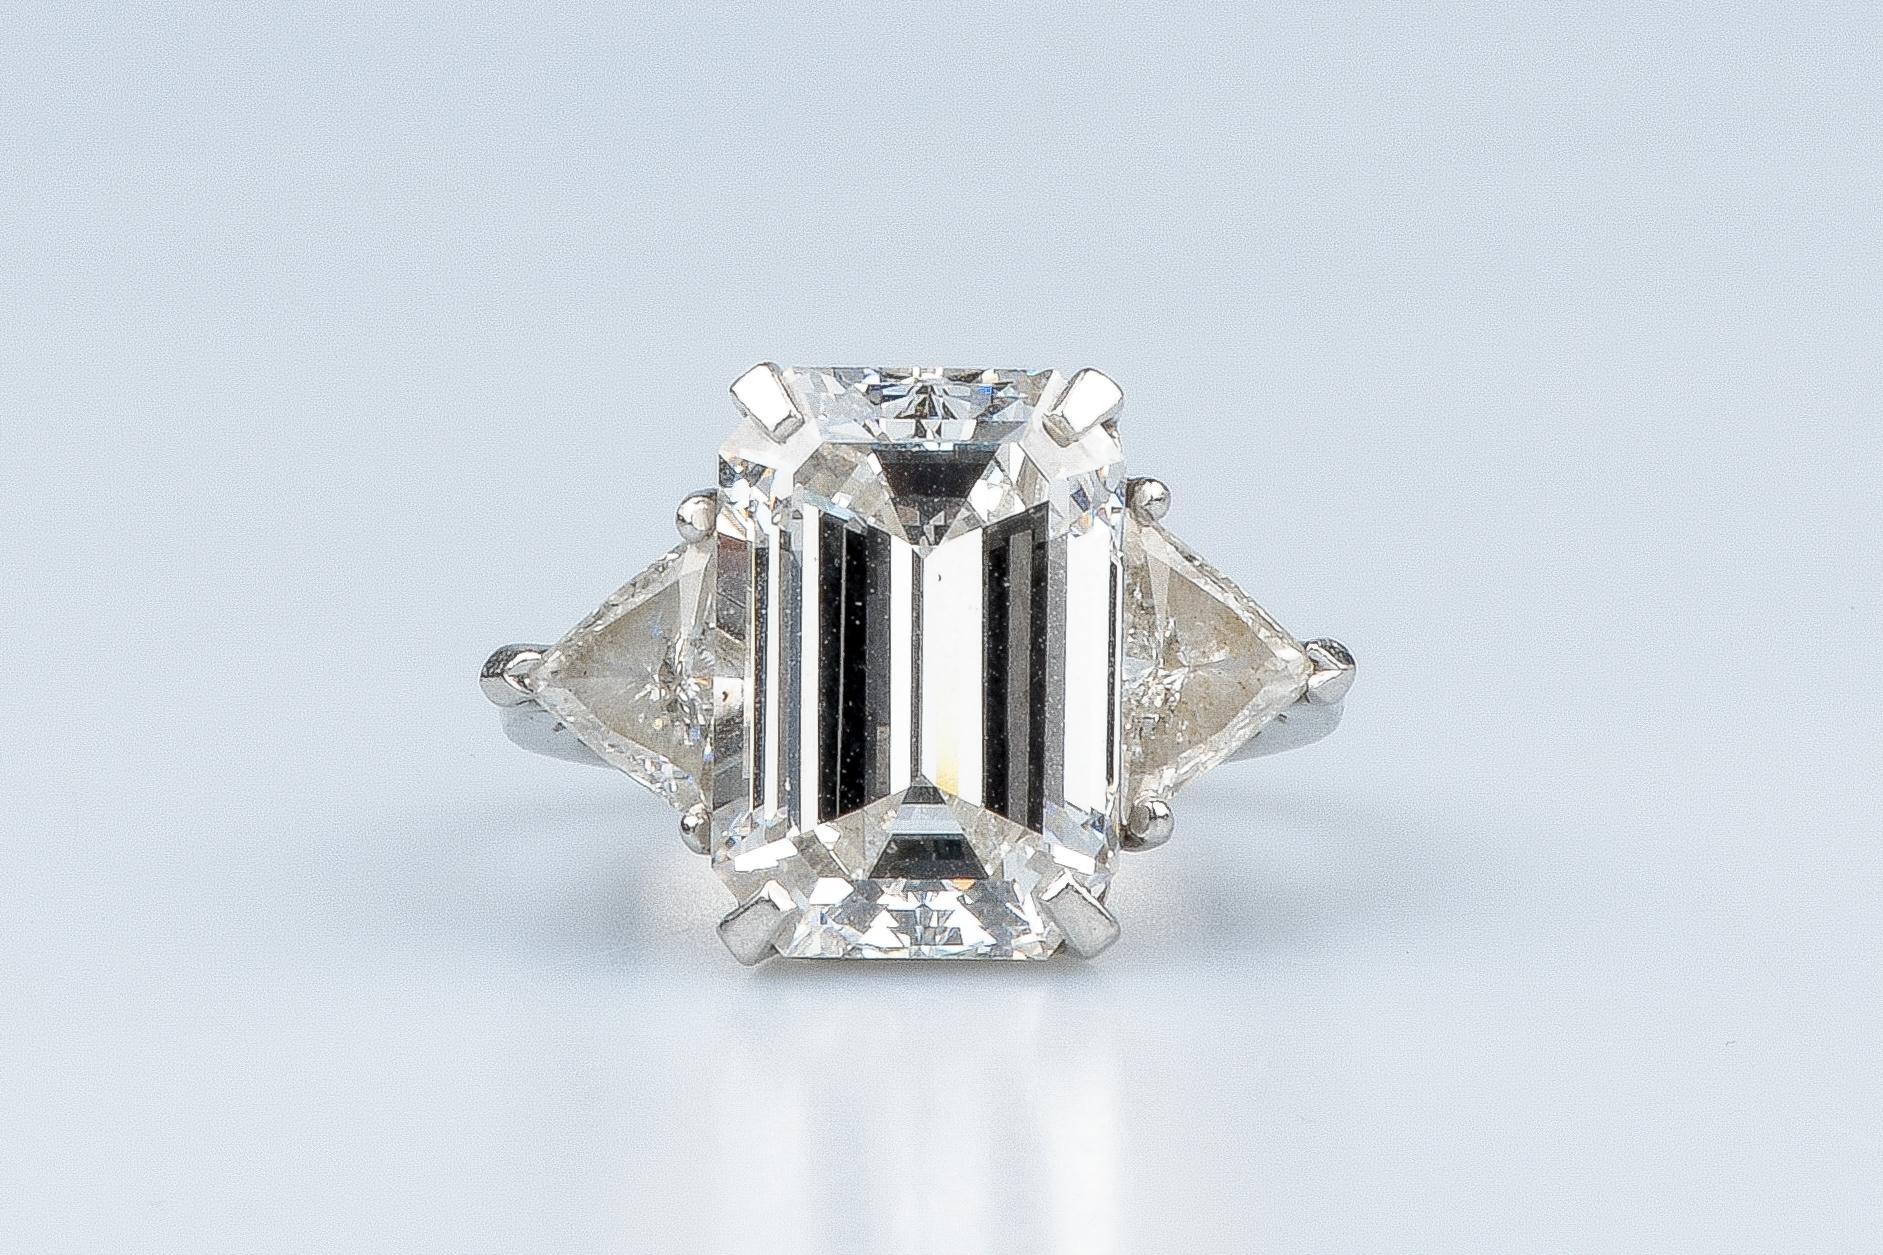 diamant taille emeraude 1 carat